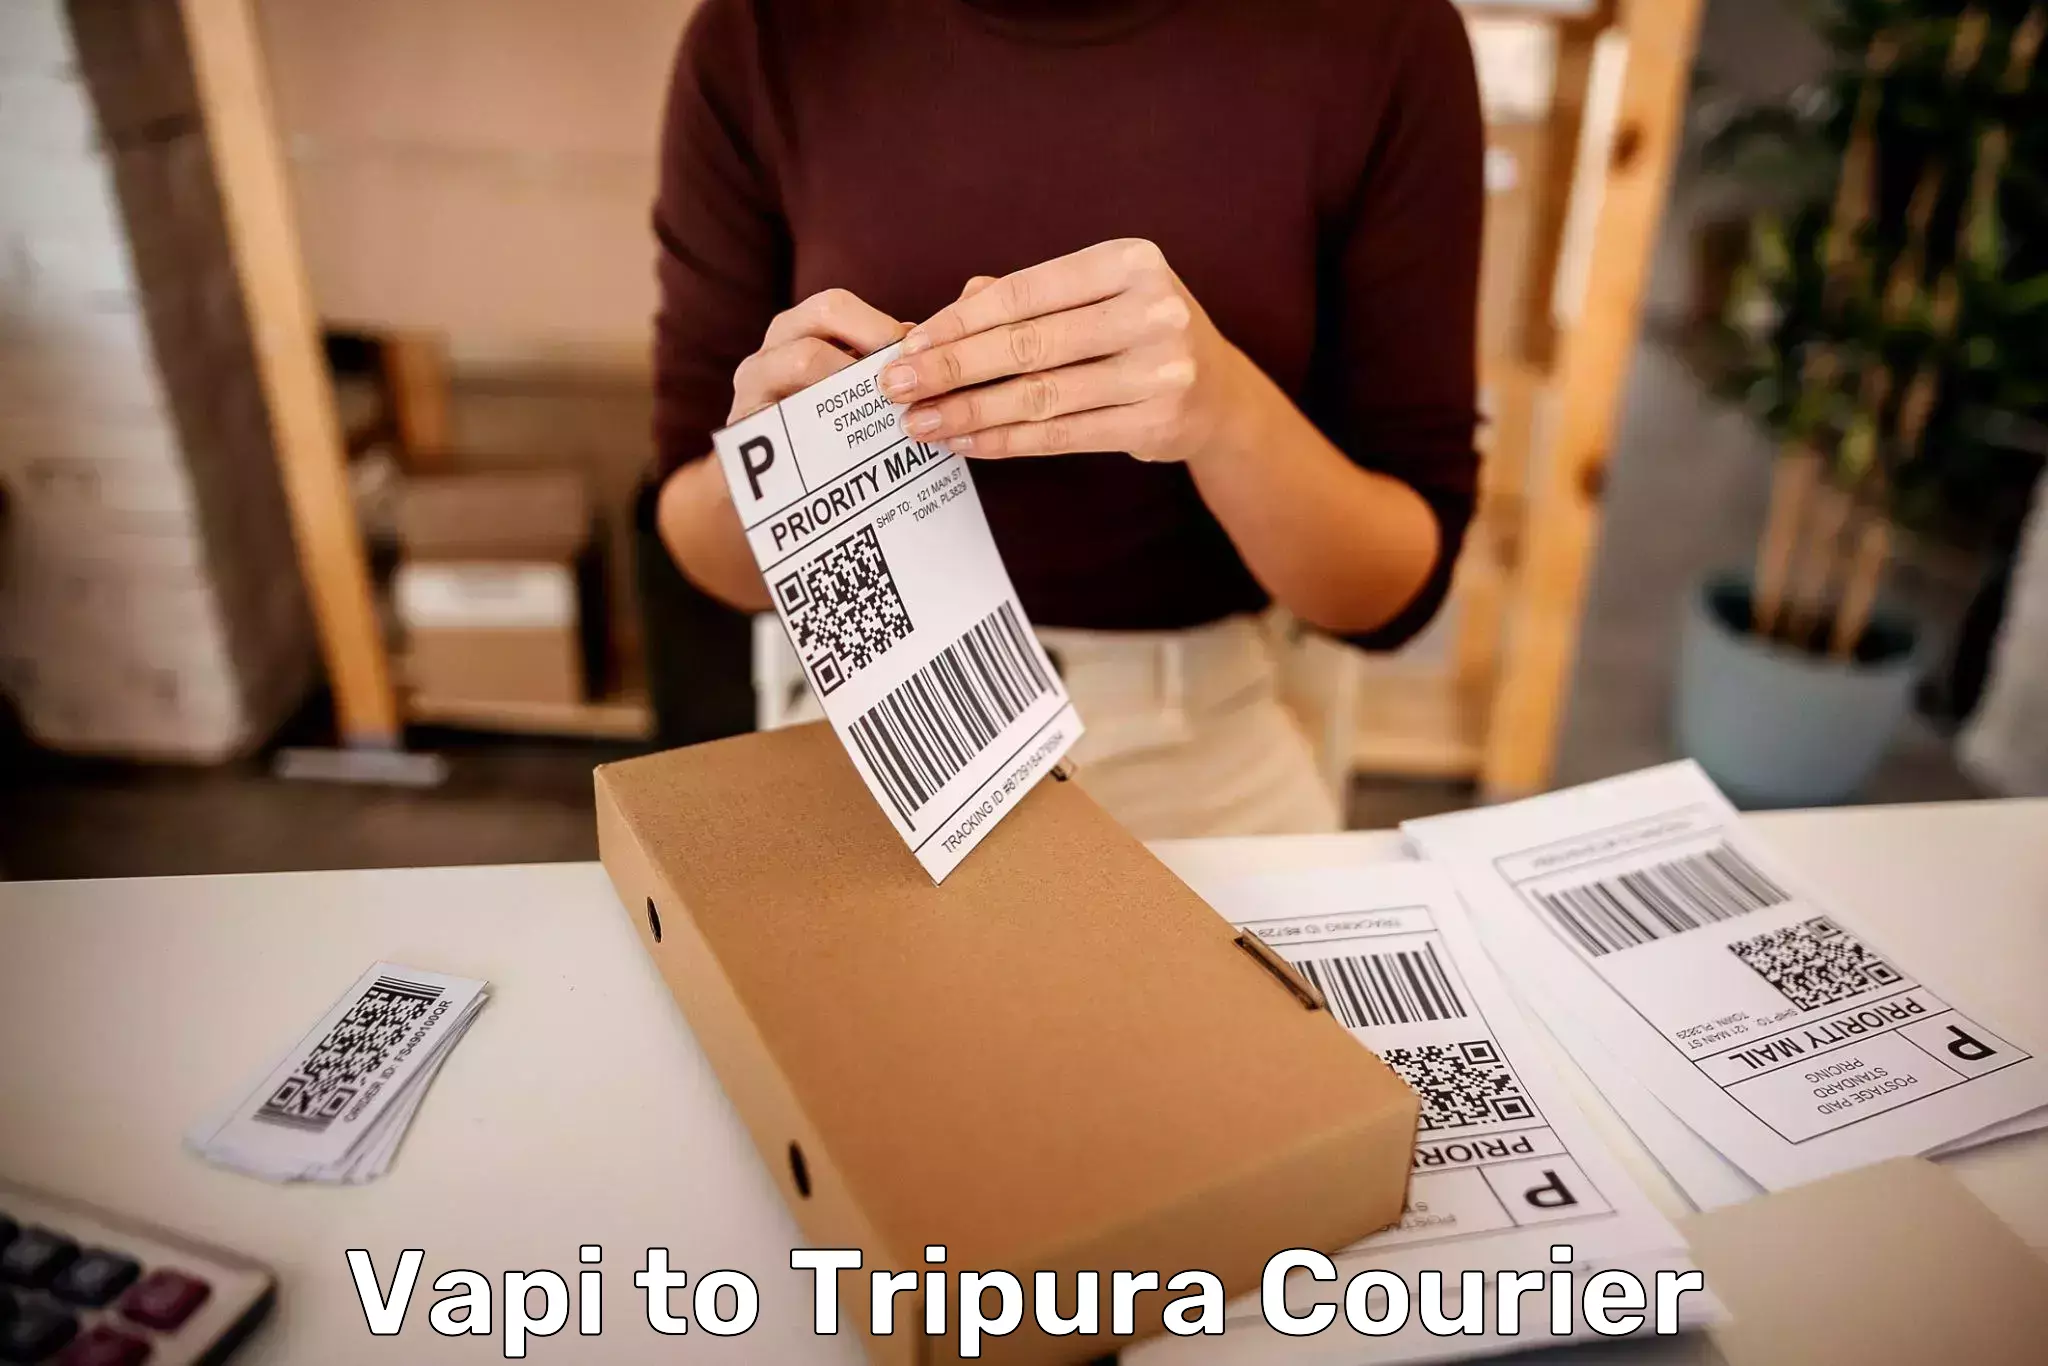 Bulk luggage shipping Vapi to Udaipur Tripura